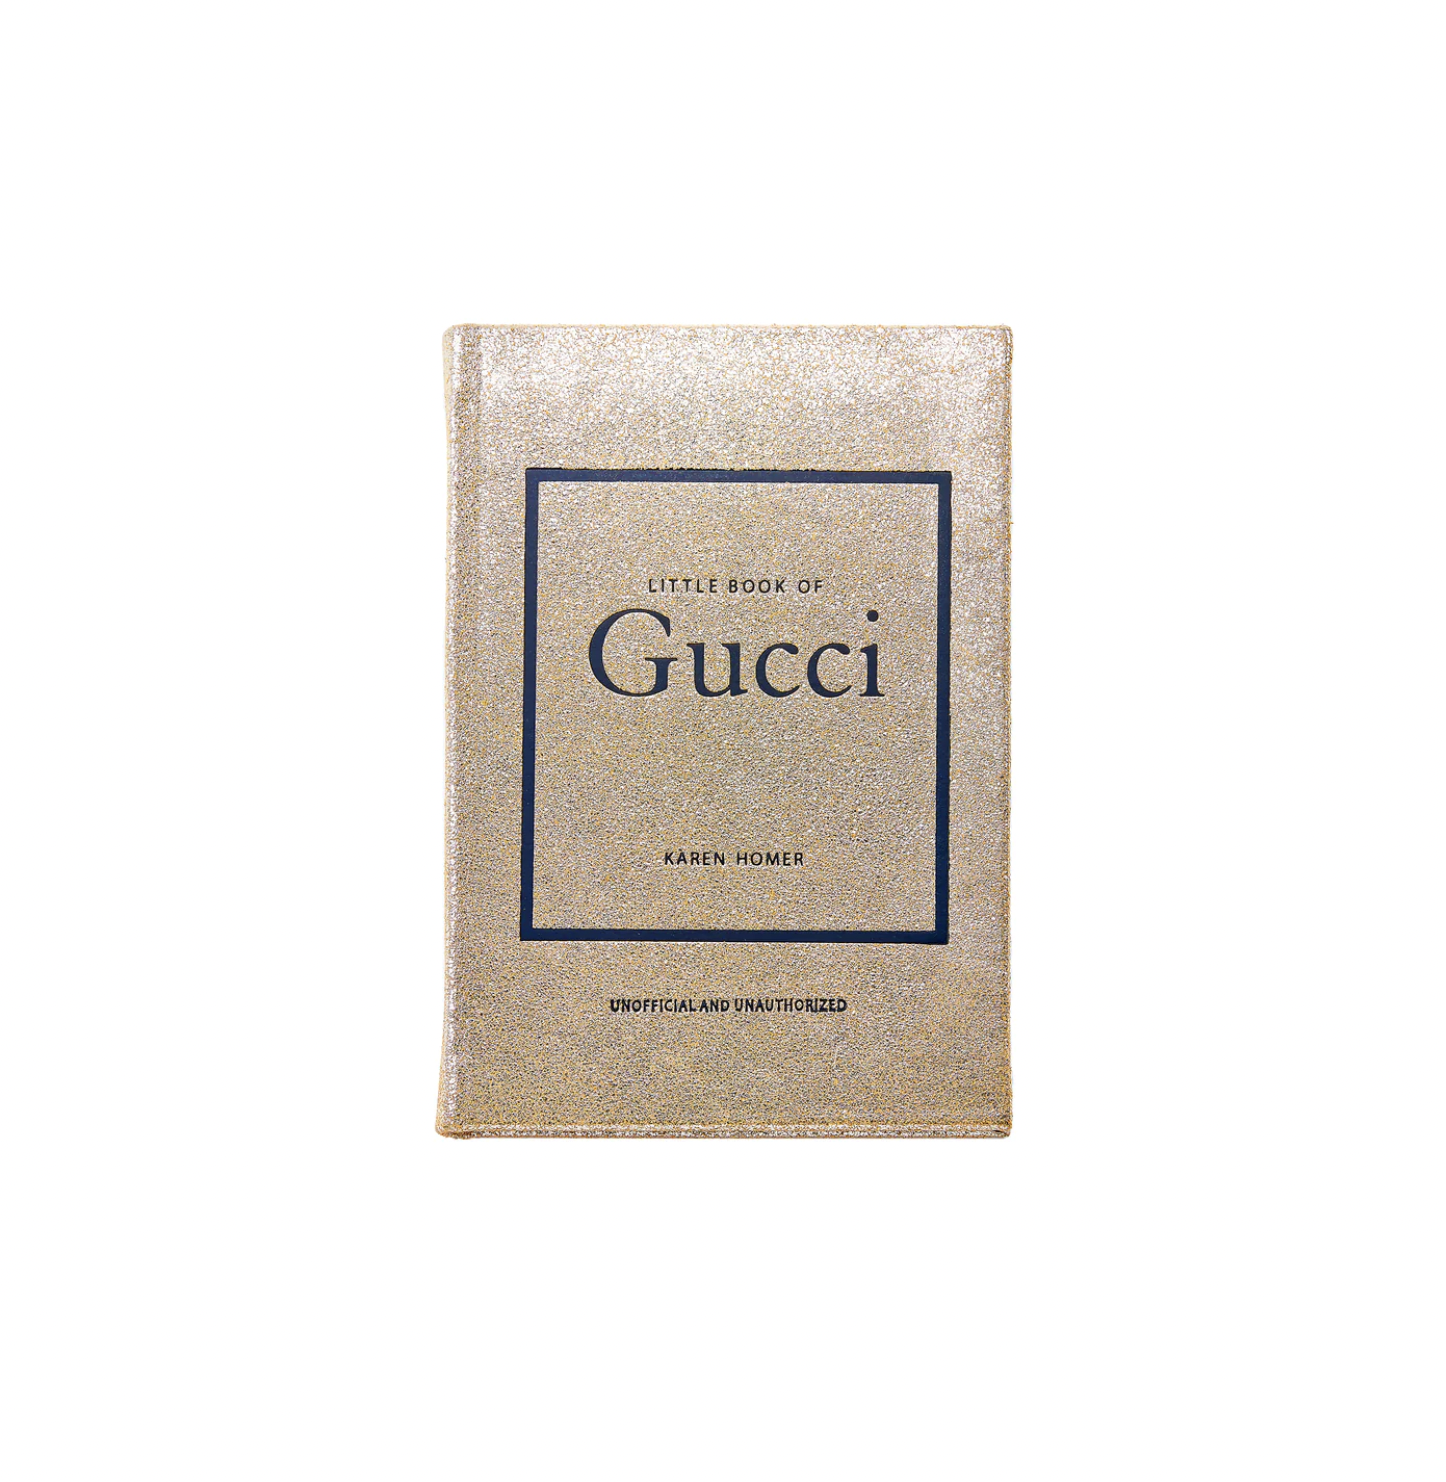 Little Book of Gucci - The Paris Market